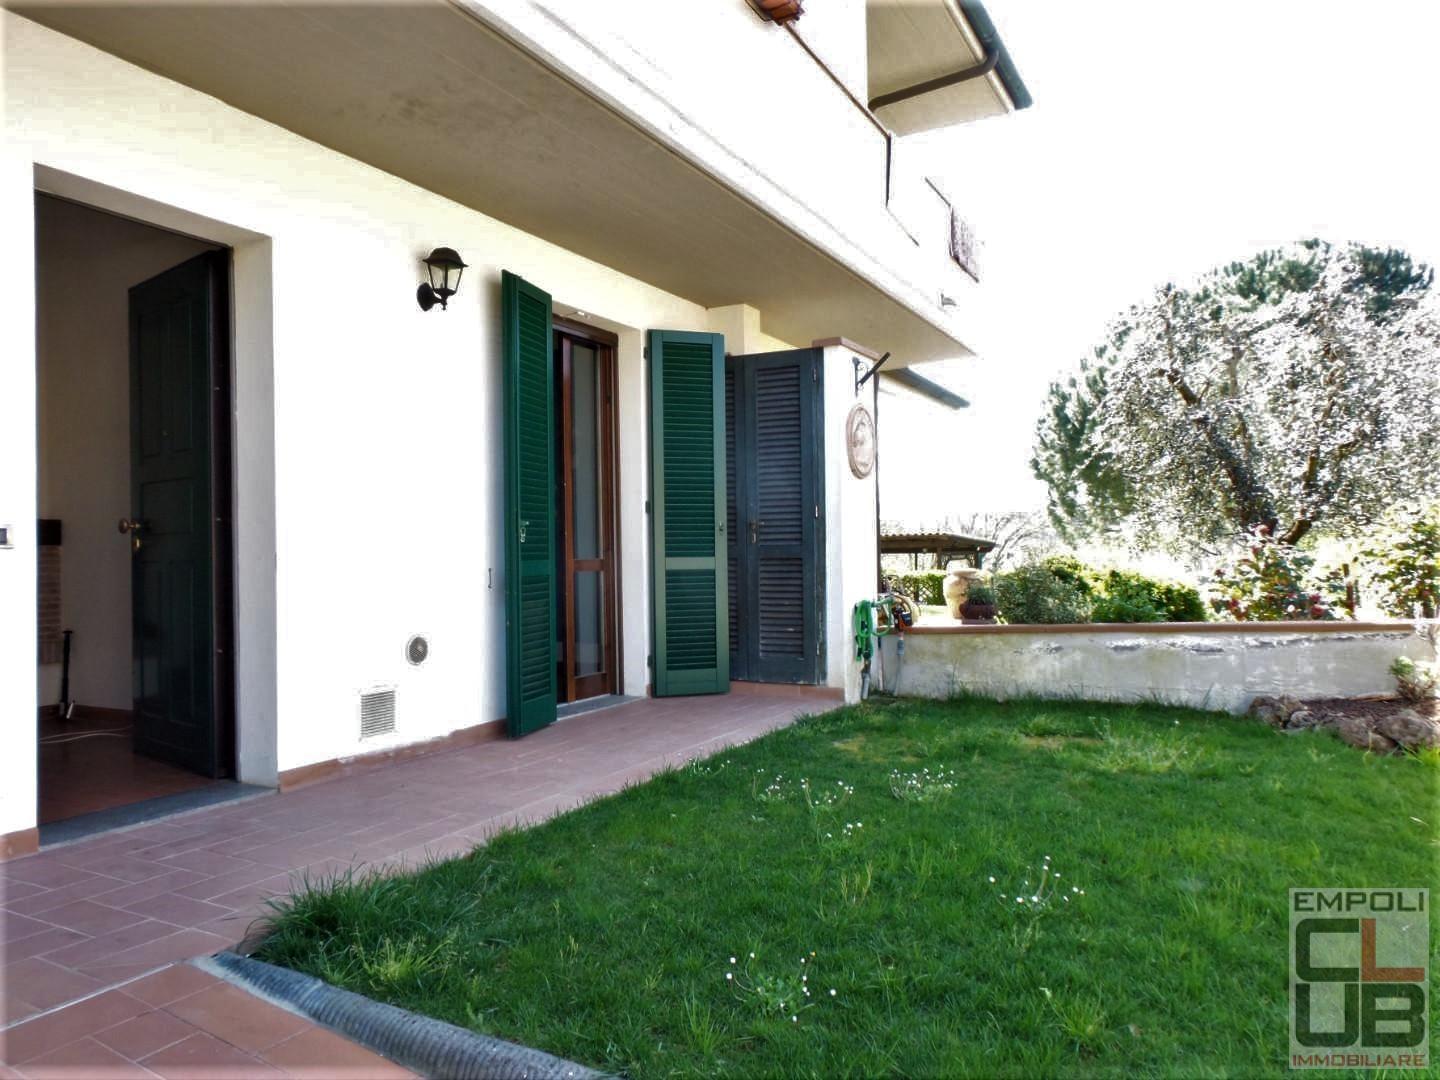 Apartment for sale in Fucecchio (FI)